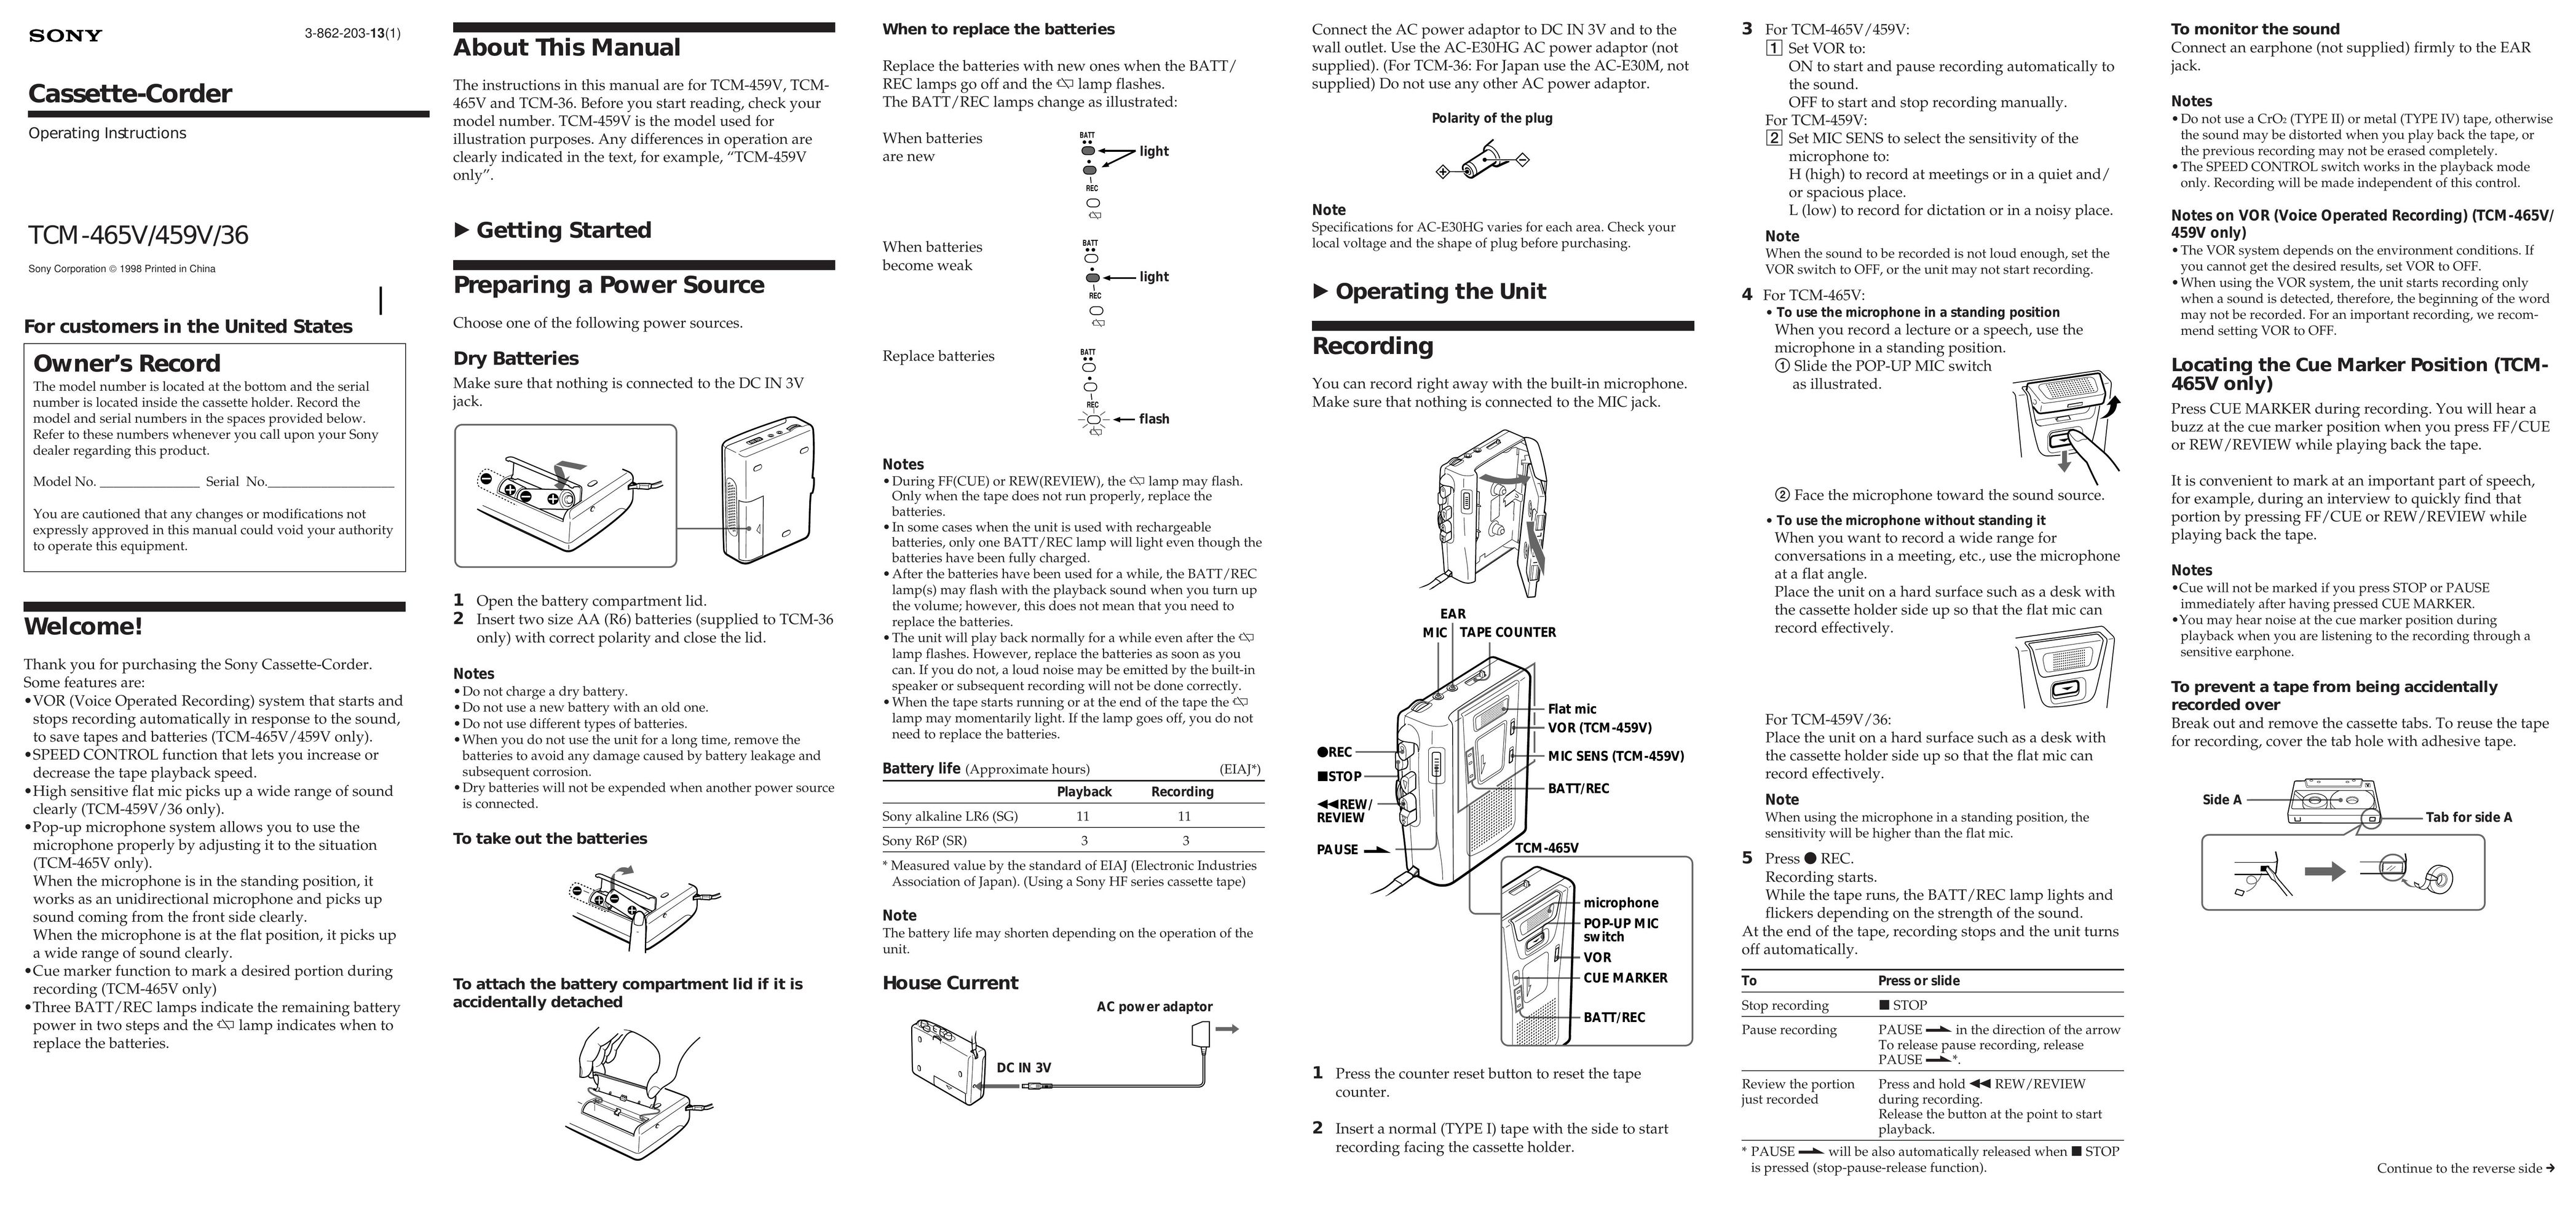 3Com TCM-465V/459V/36 Pager User Manual